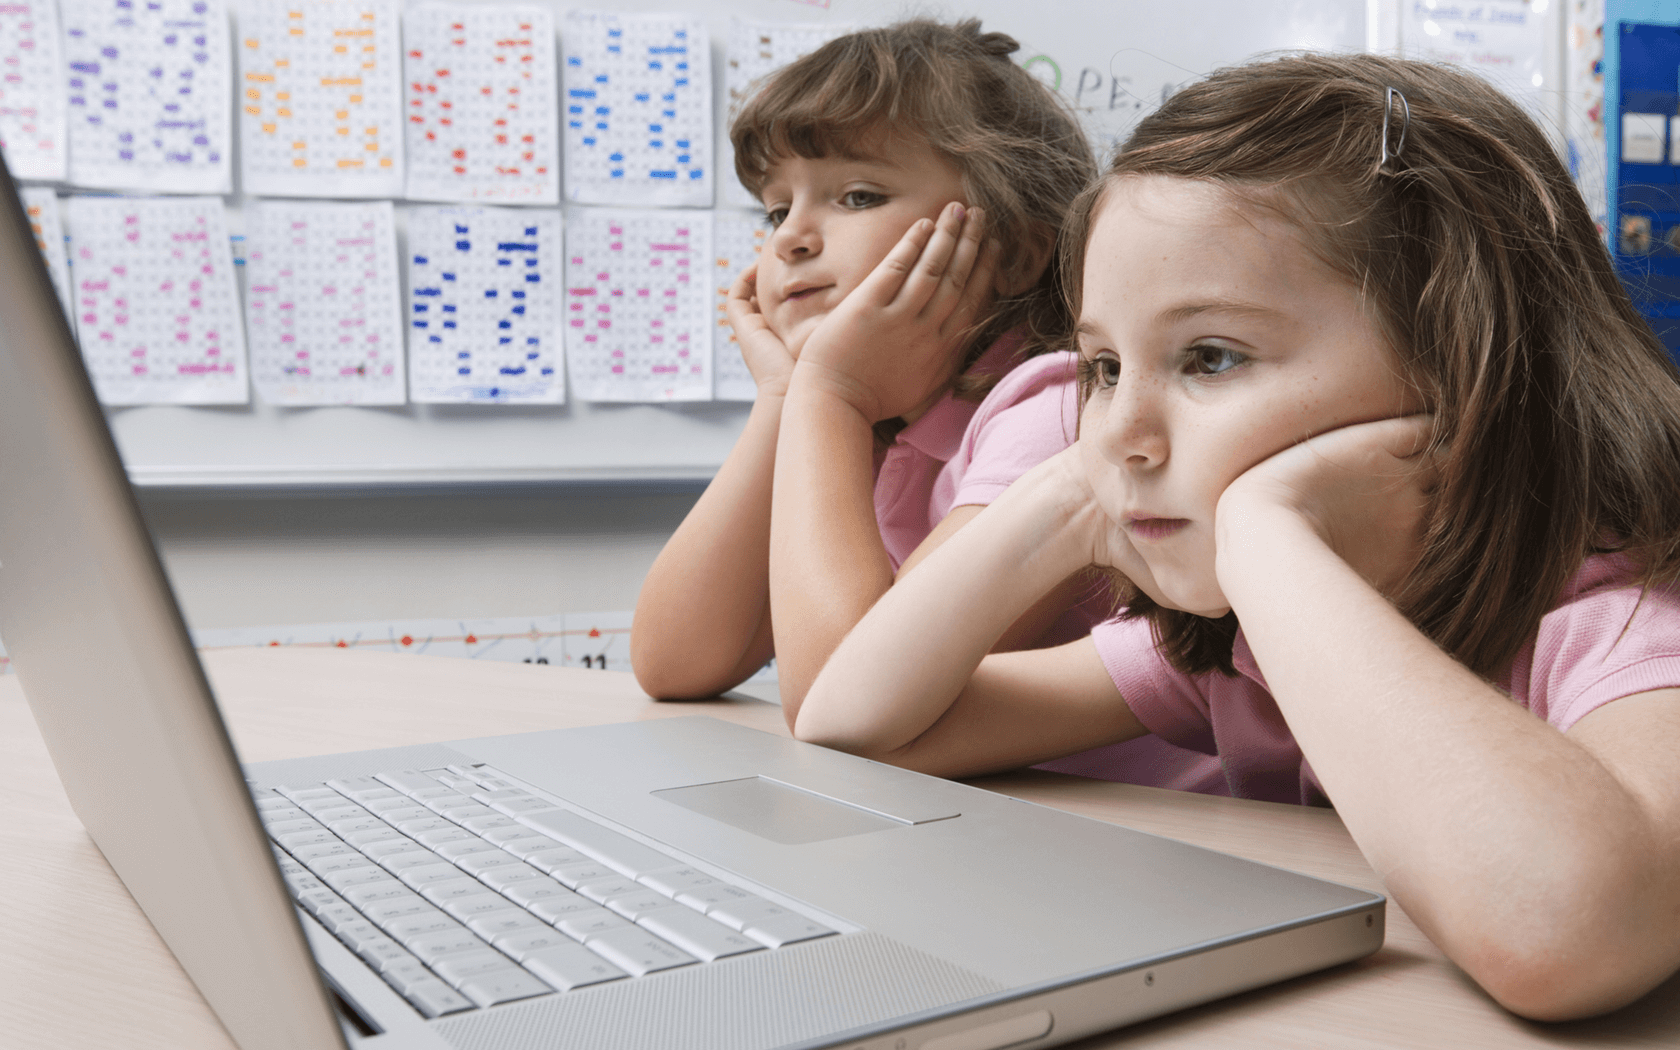 2人の欧米人の子どもが学校でパソコンに表示された電子書籍を読んでいるイメージ